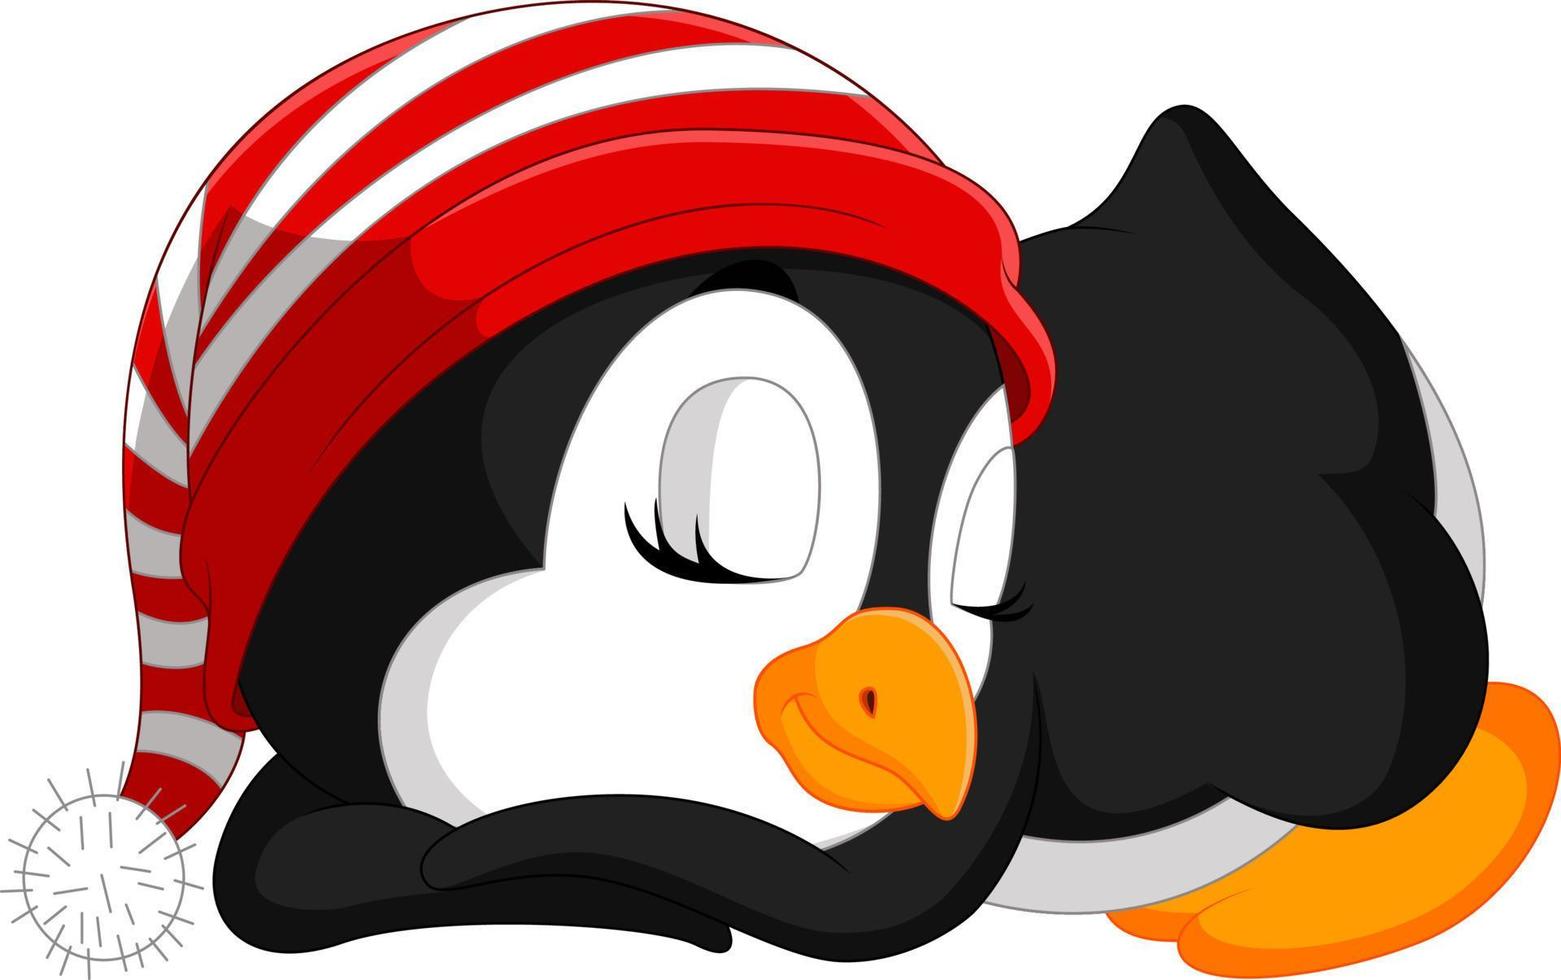 Cute penguin cartoon vector